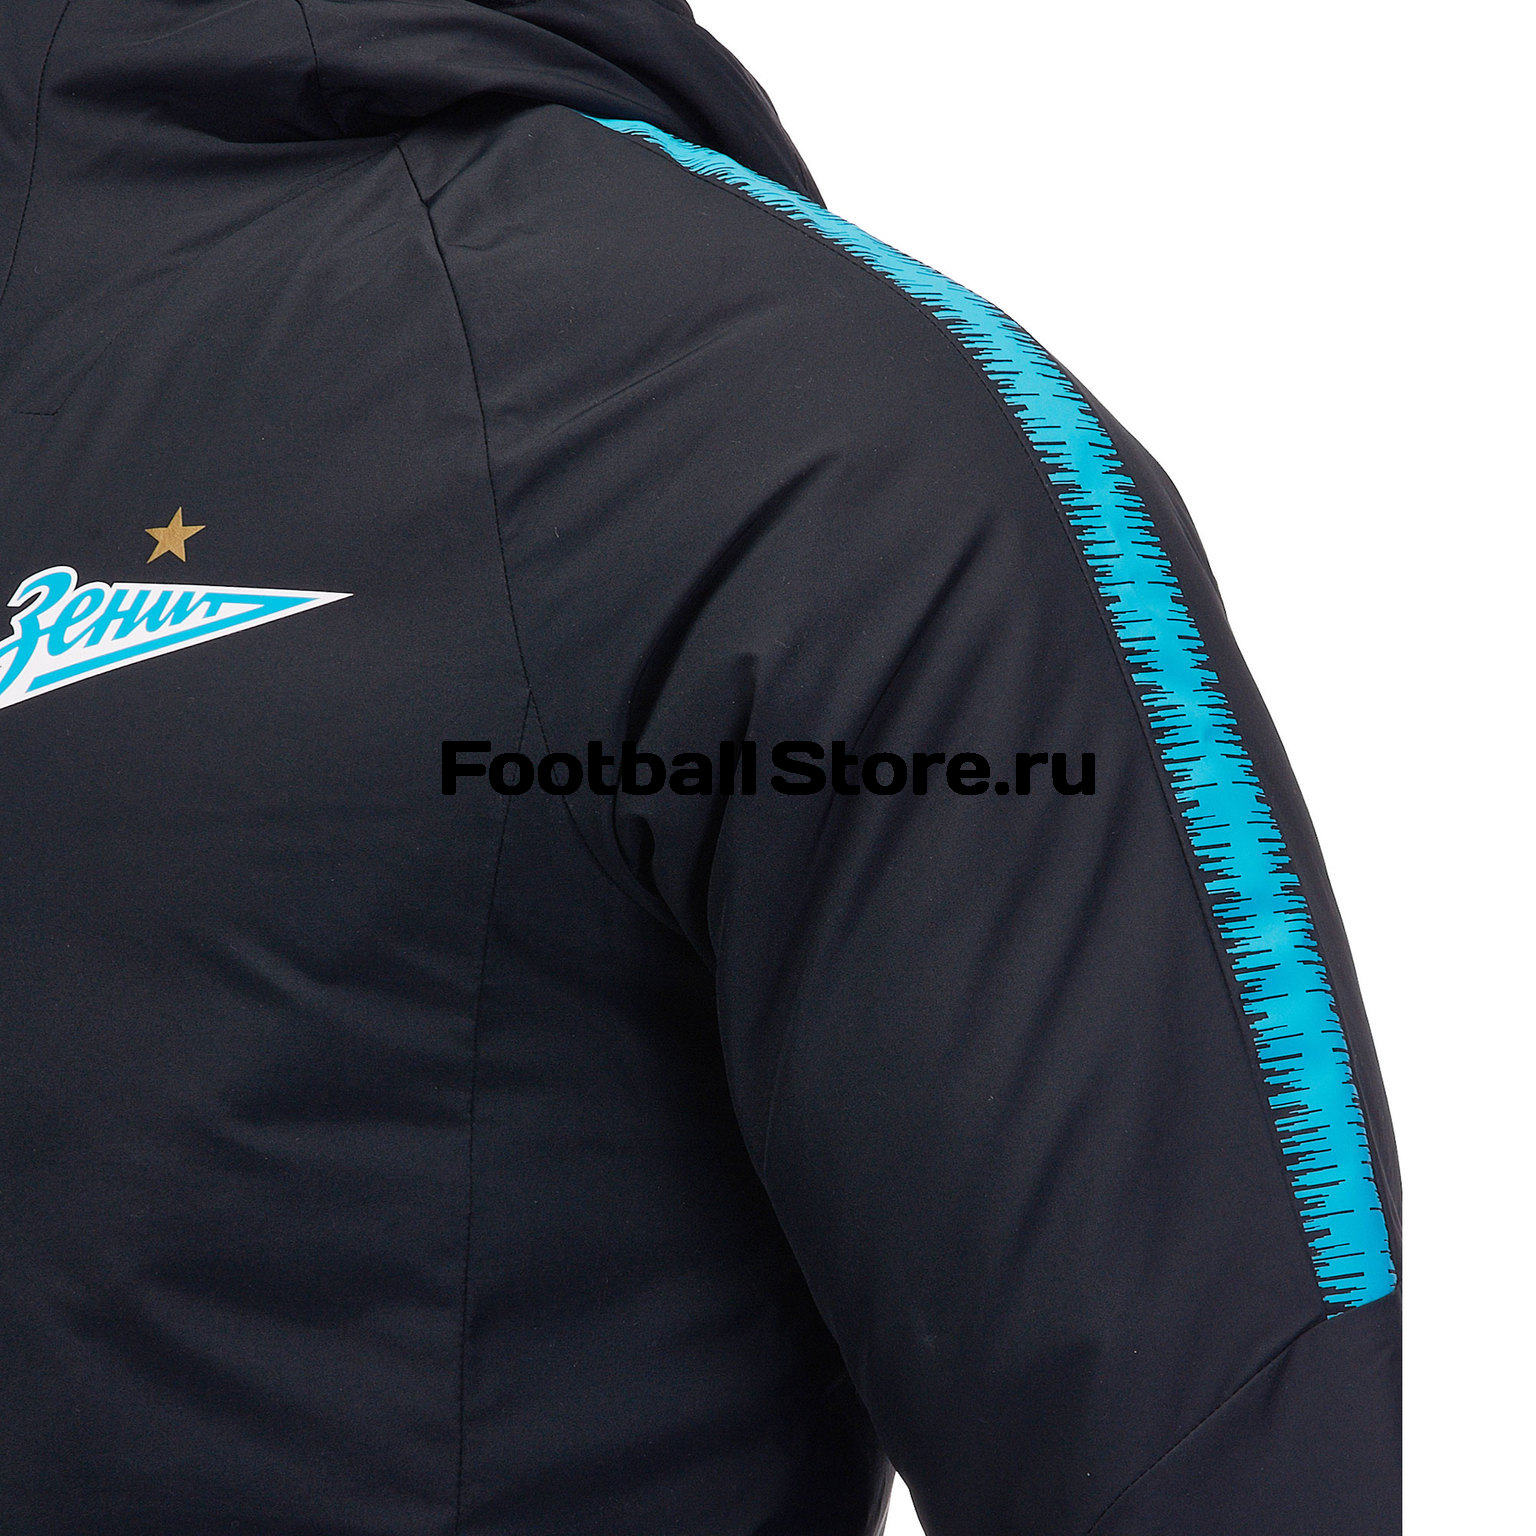 Куртка зимняя Nike Zenit 2018/19